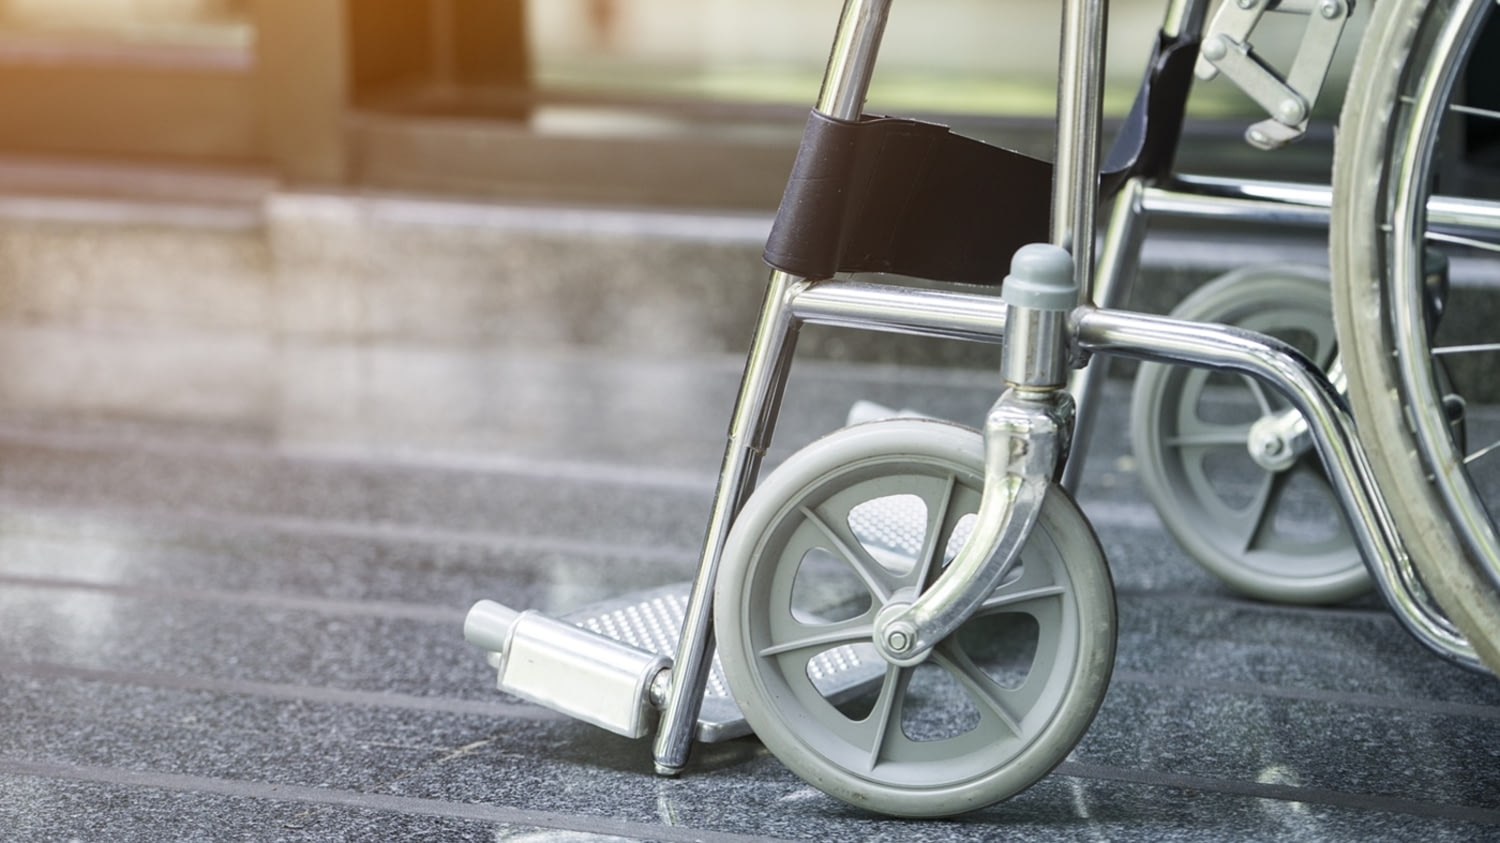 Auf einem Krankenhausflur geparkter Rollstuhl